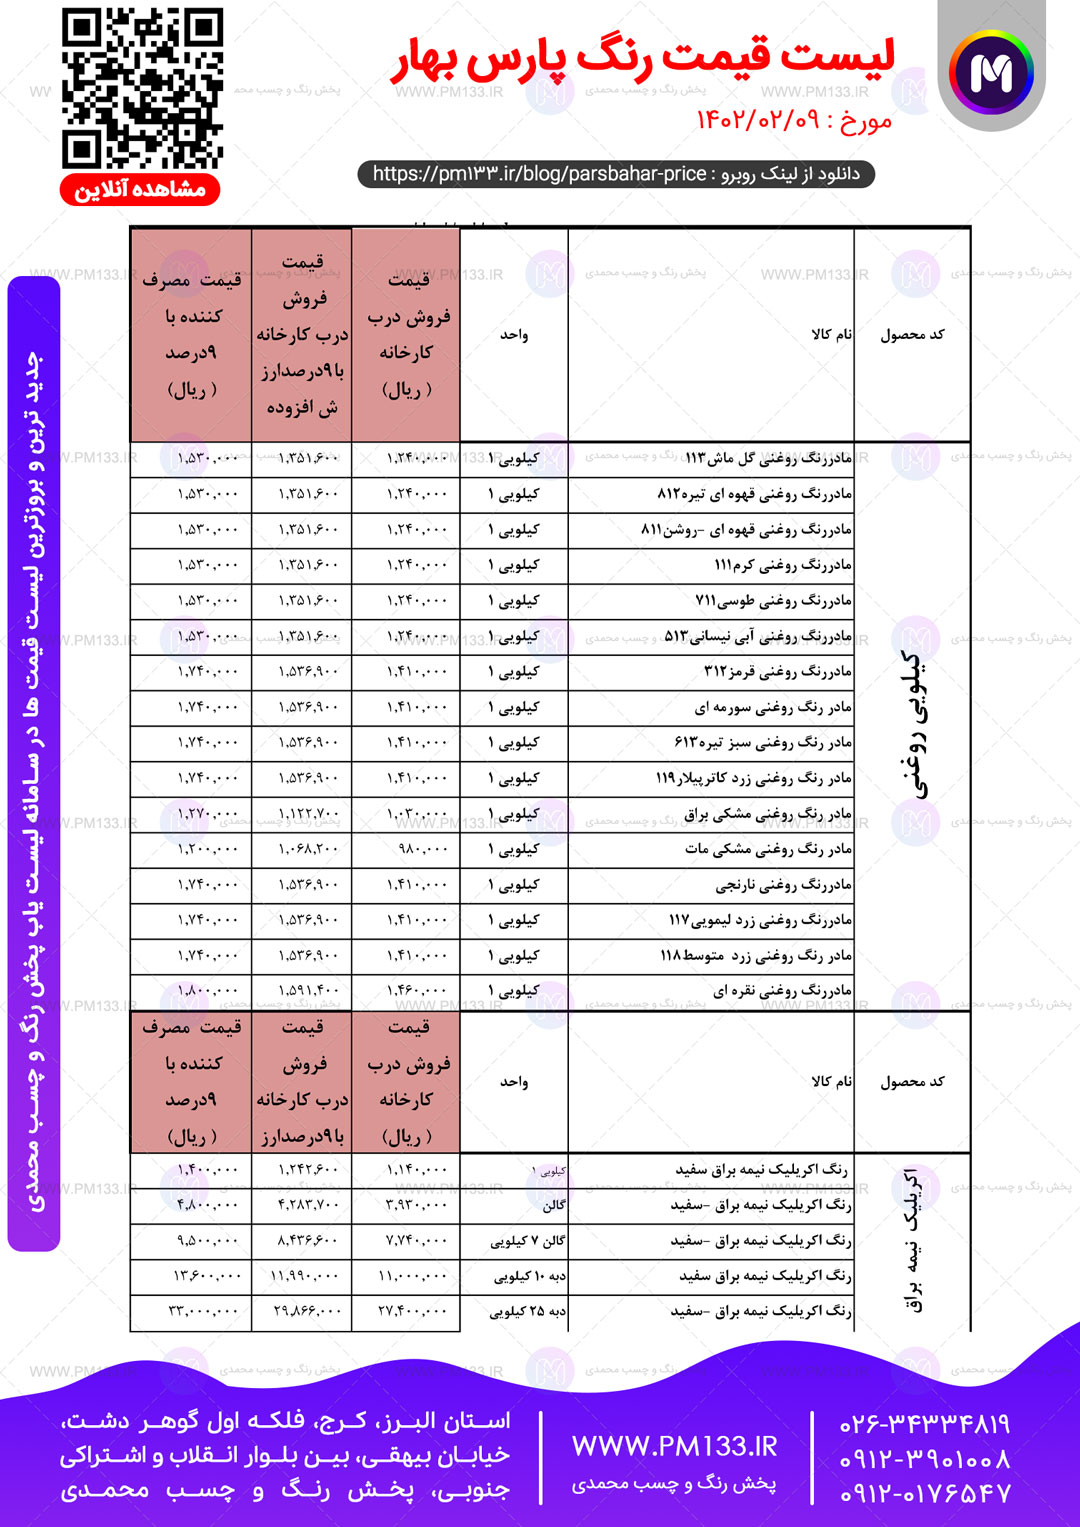 لیست قیمت پارس بهار مورخ 09-02-1402 صفحه4